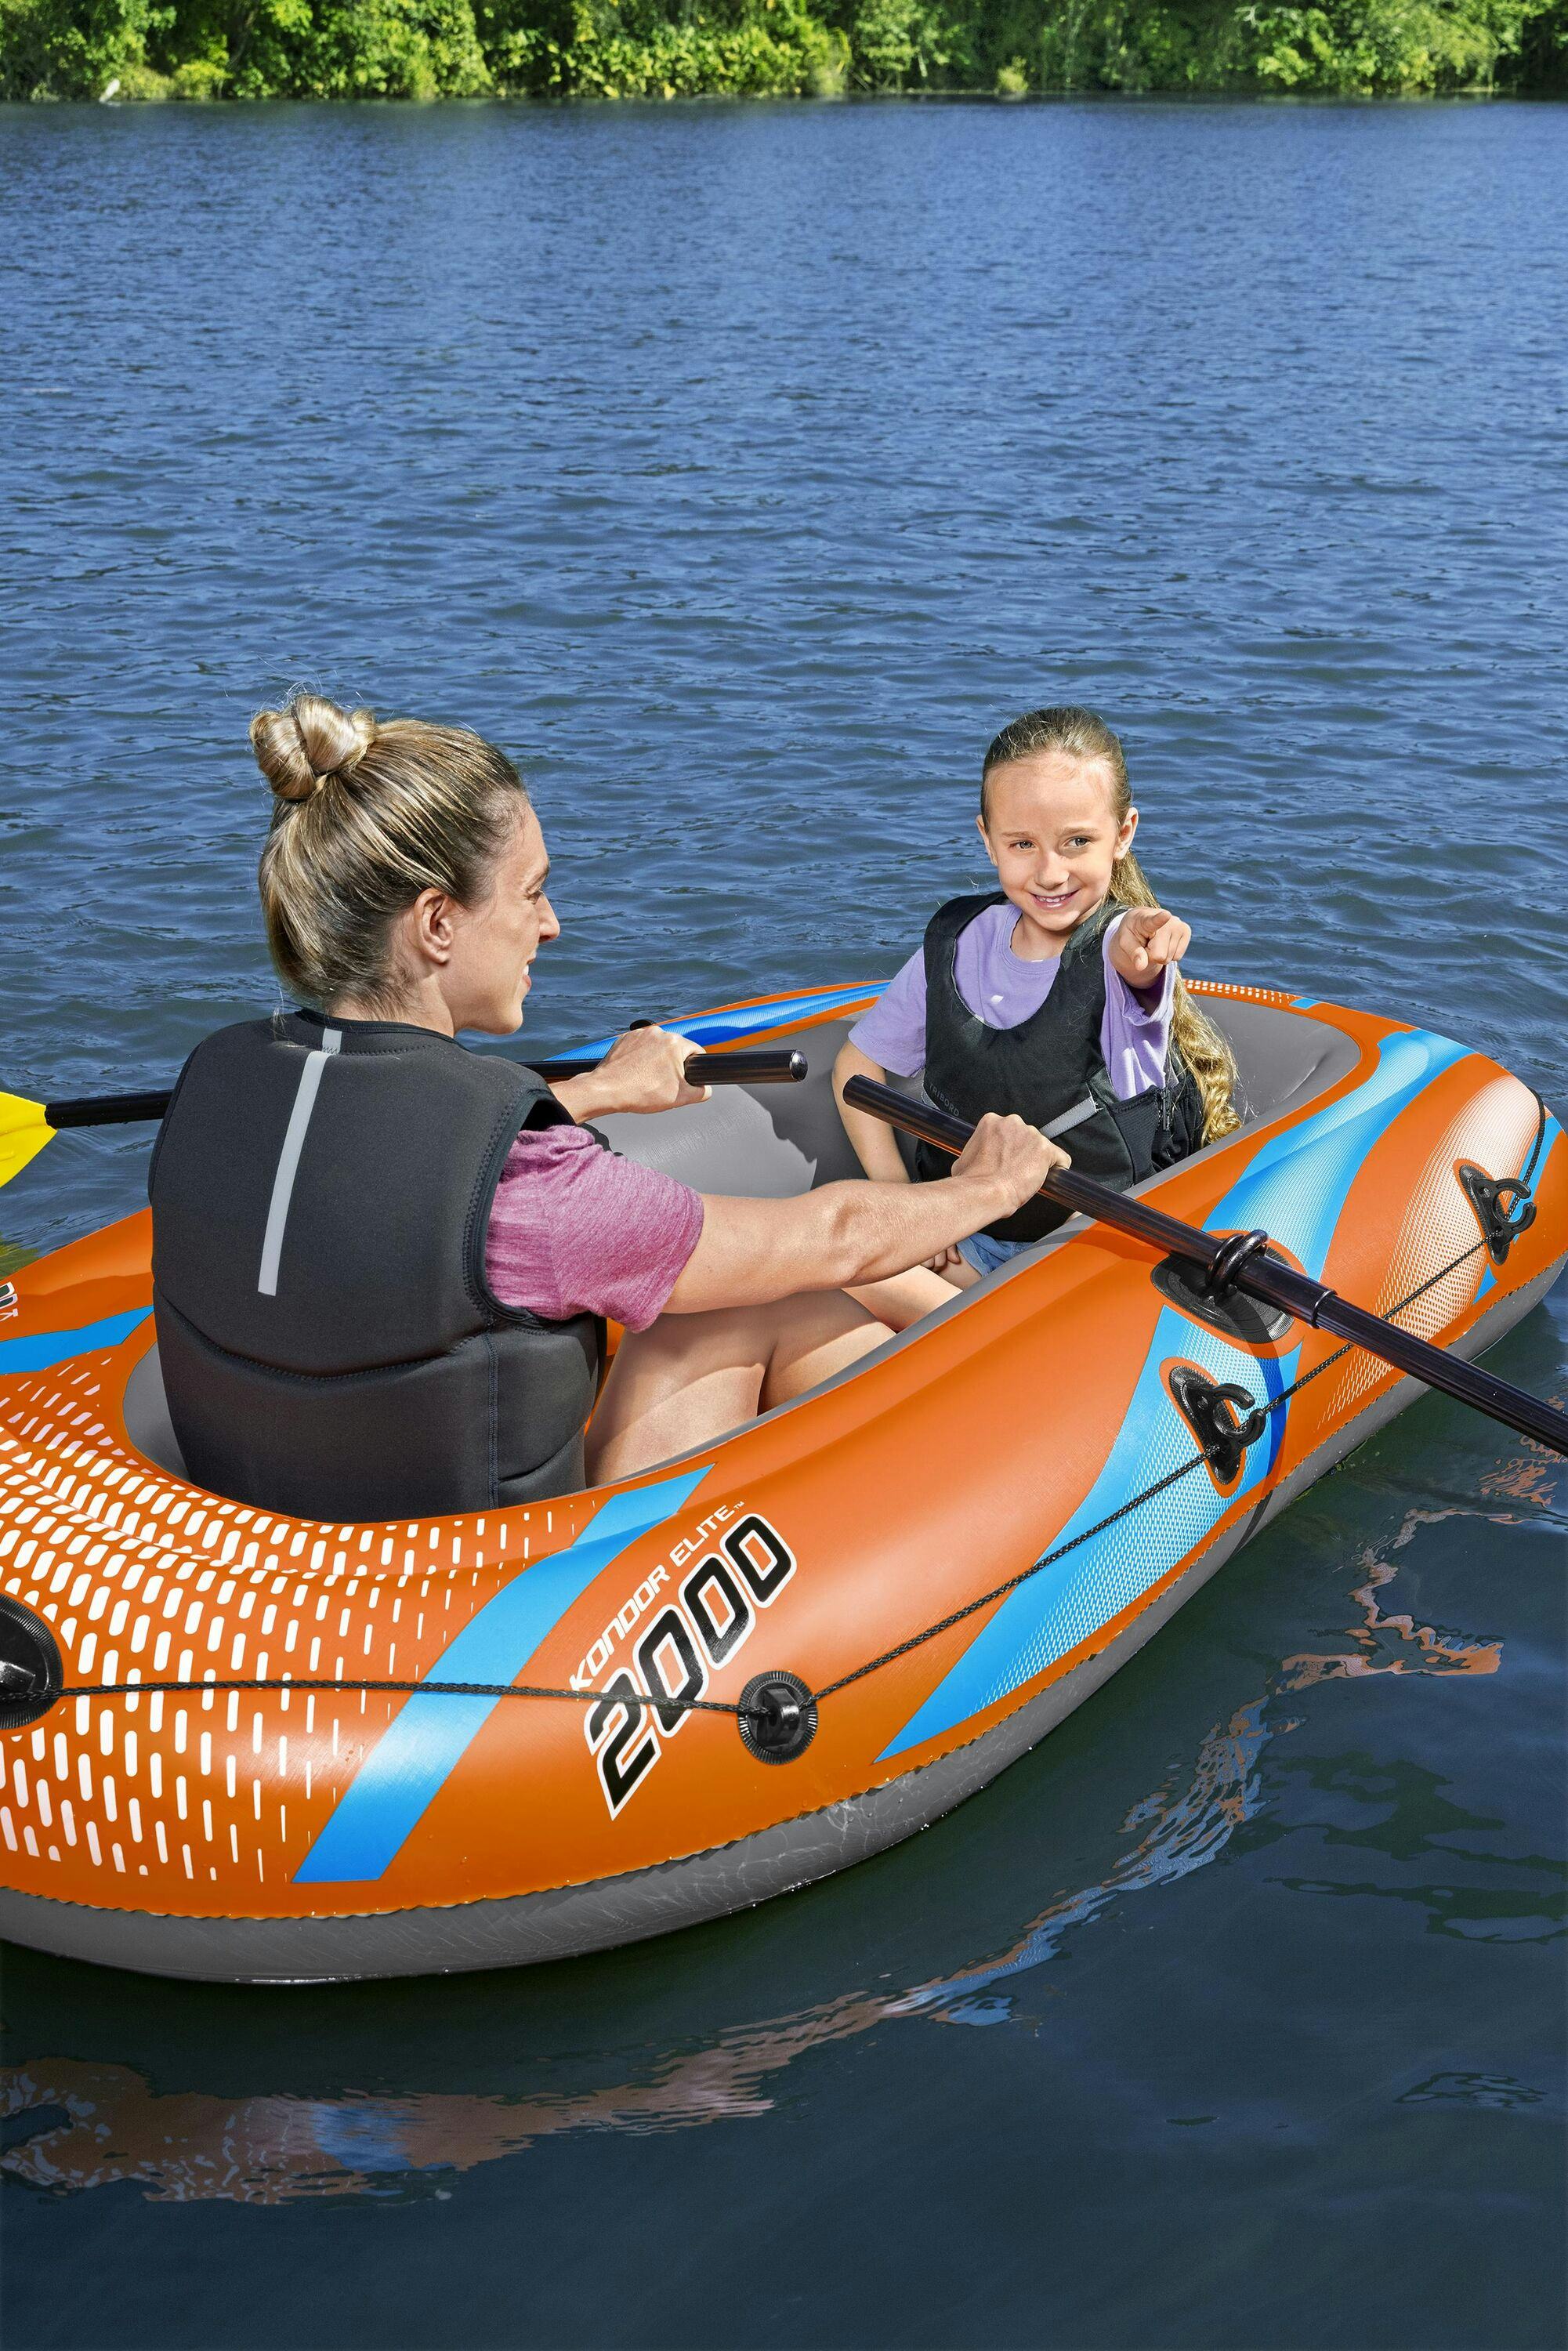 Sports d'eau Bateau gonflable Kondor Elite™ 2000 raft set, 196 x 106 cm, 1 adulte+1enfant, 120kg max, pompe à pied et 2 pagaies Bestway 20